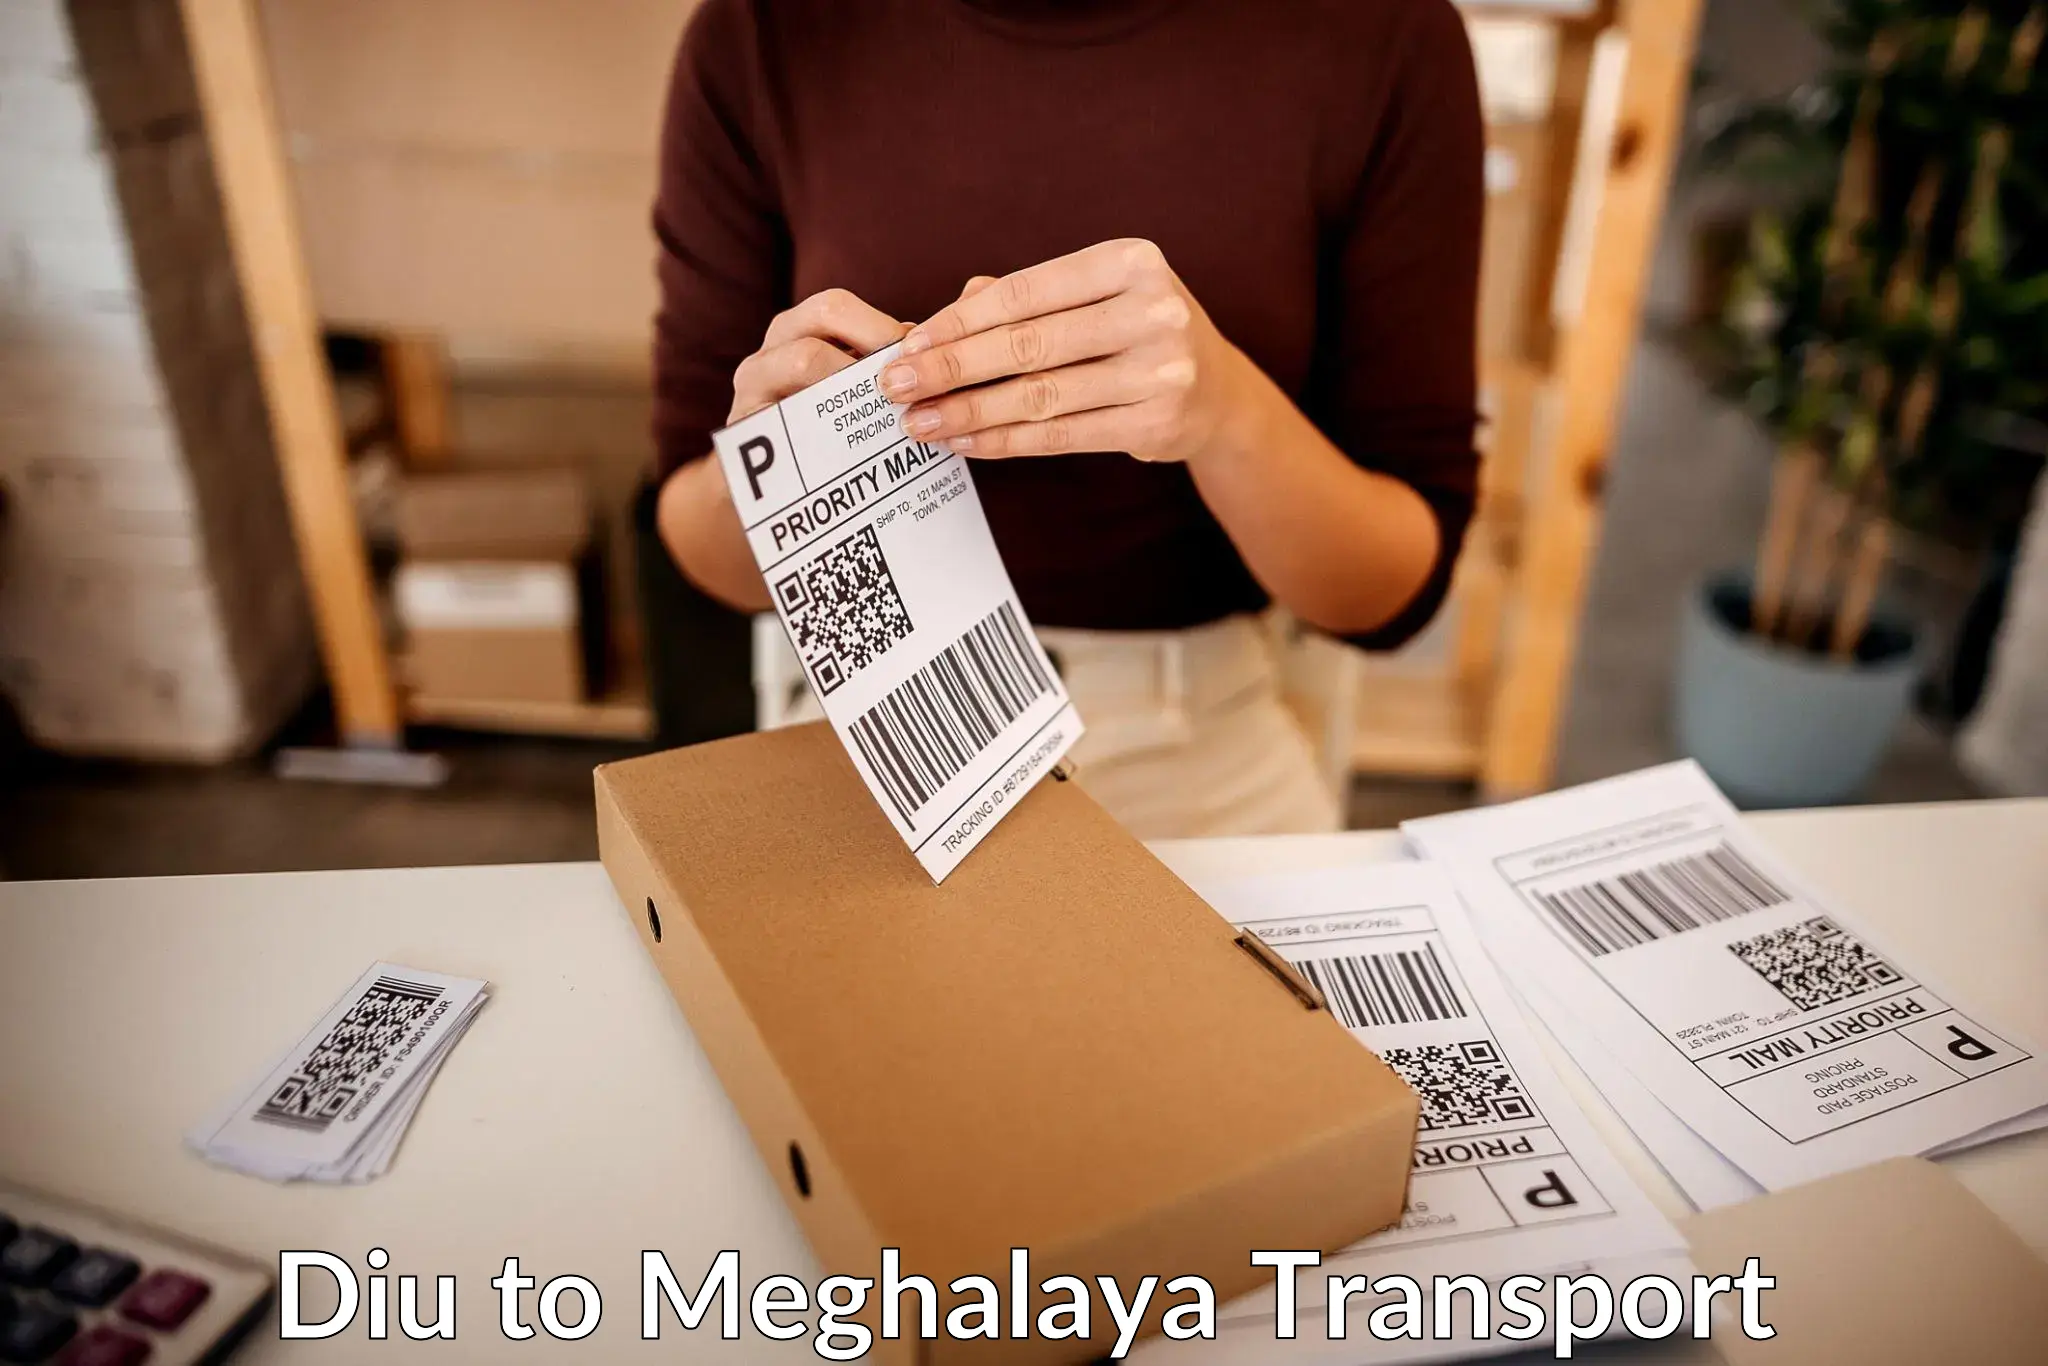 Cargo transportation services Diu to Shillong